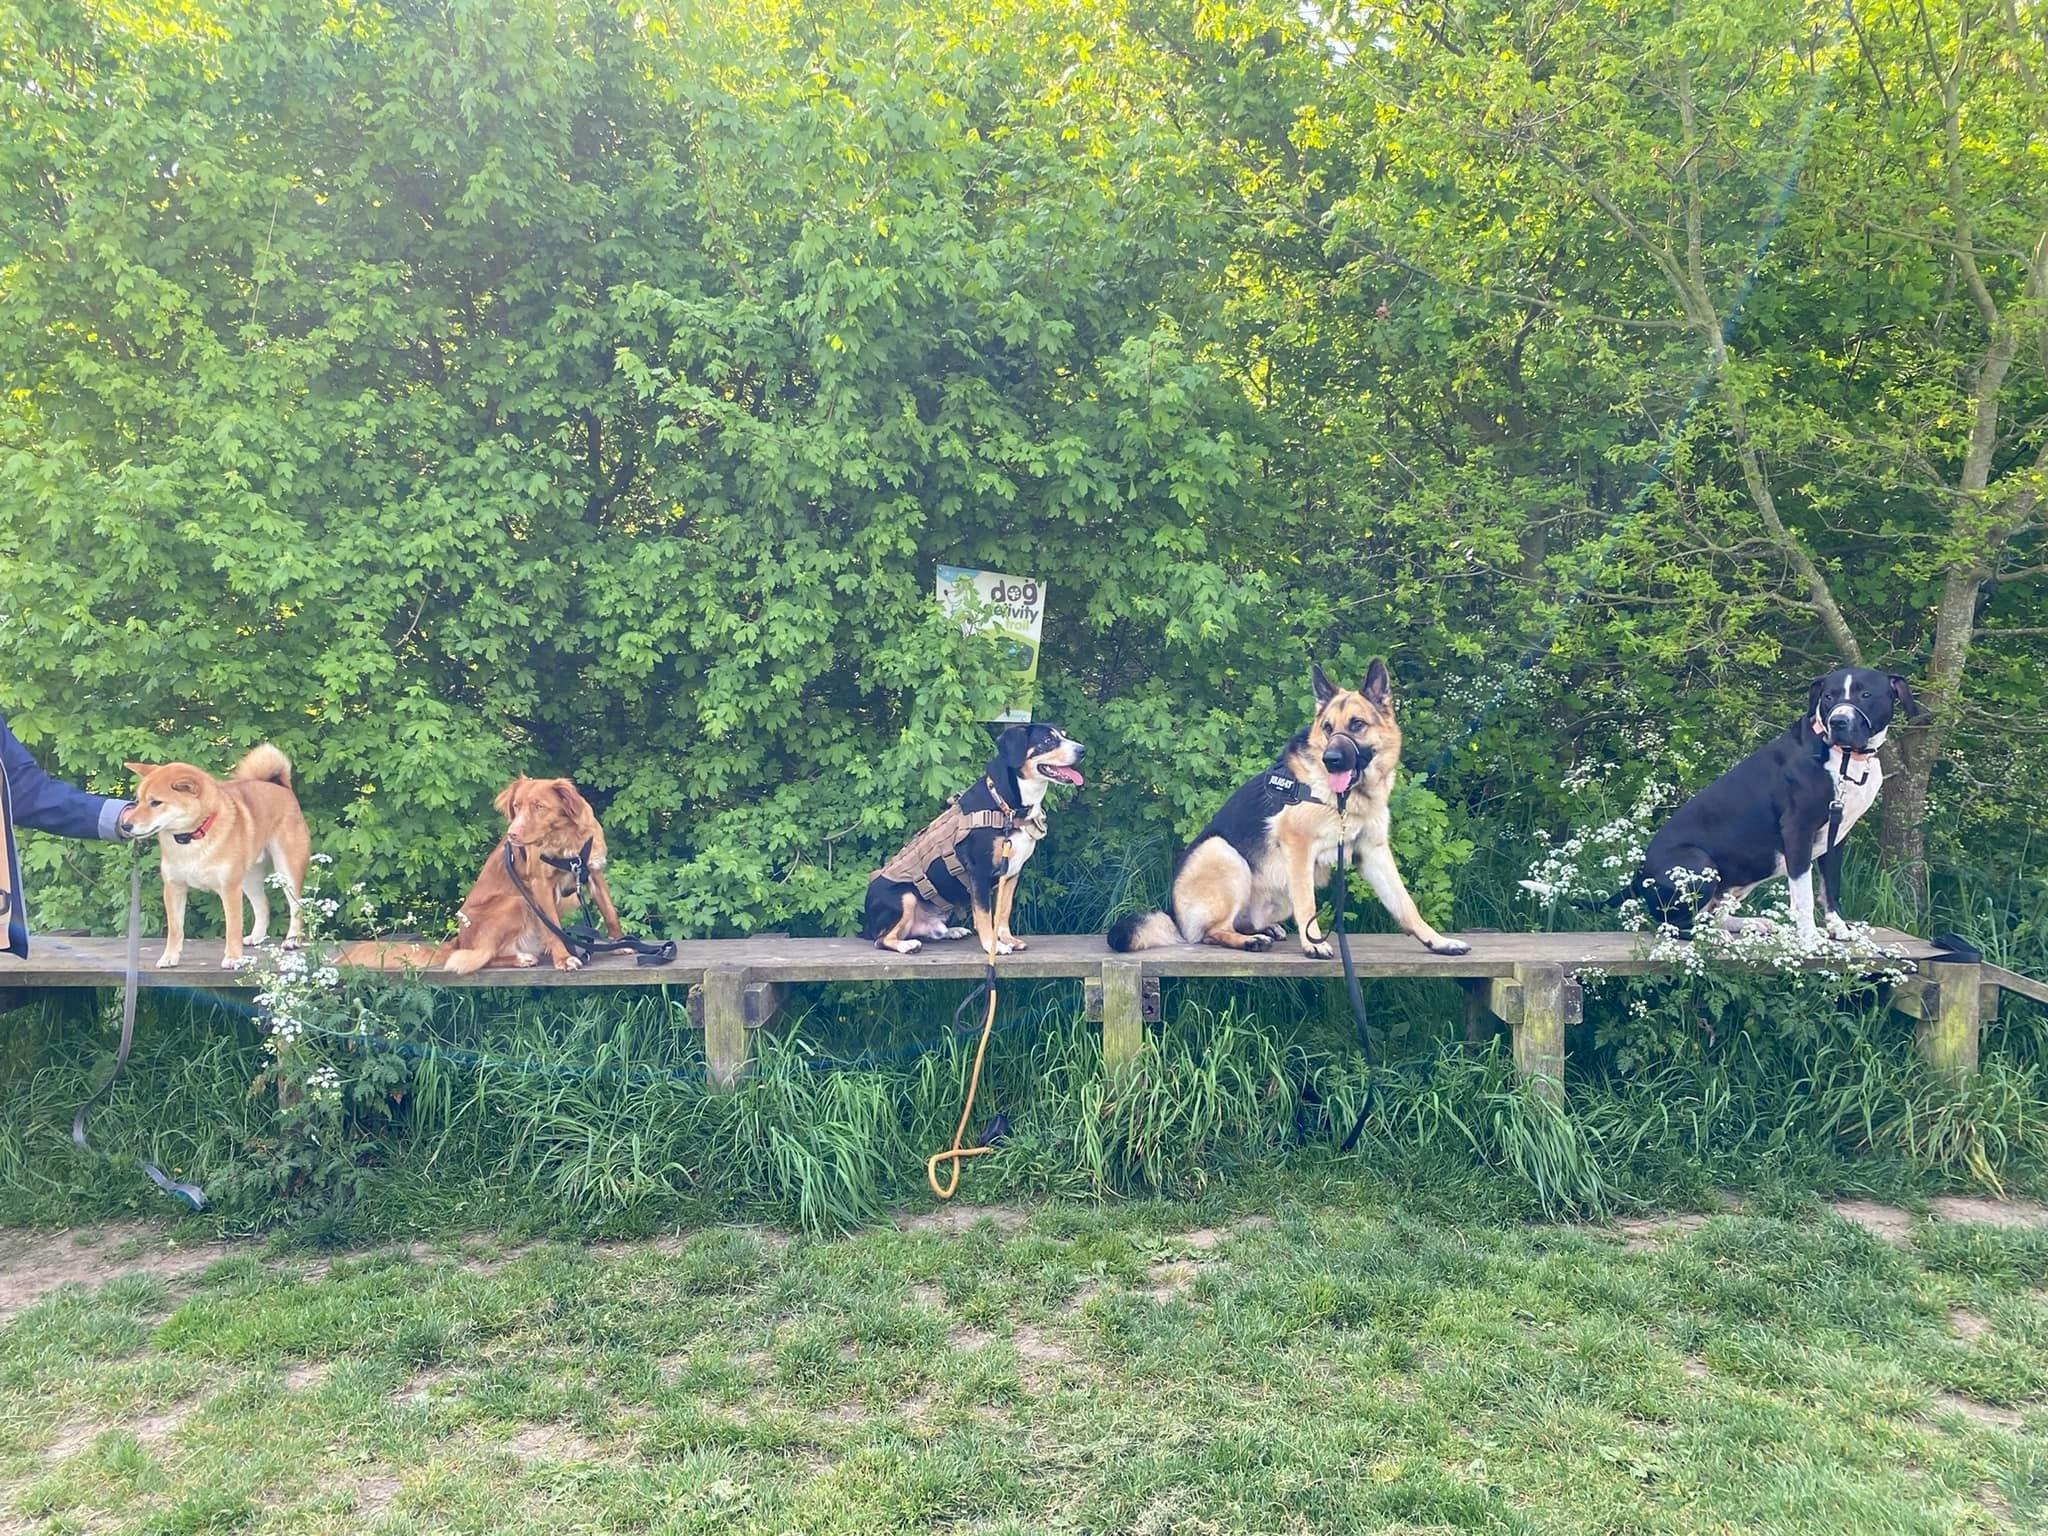 Zulu and her doggie friends